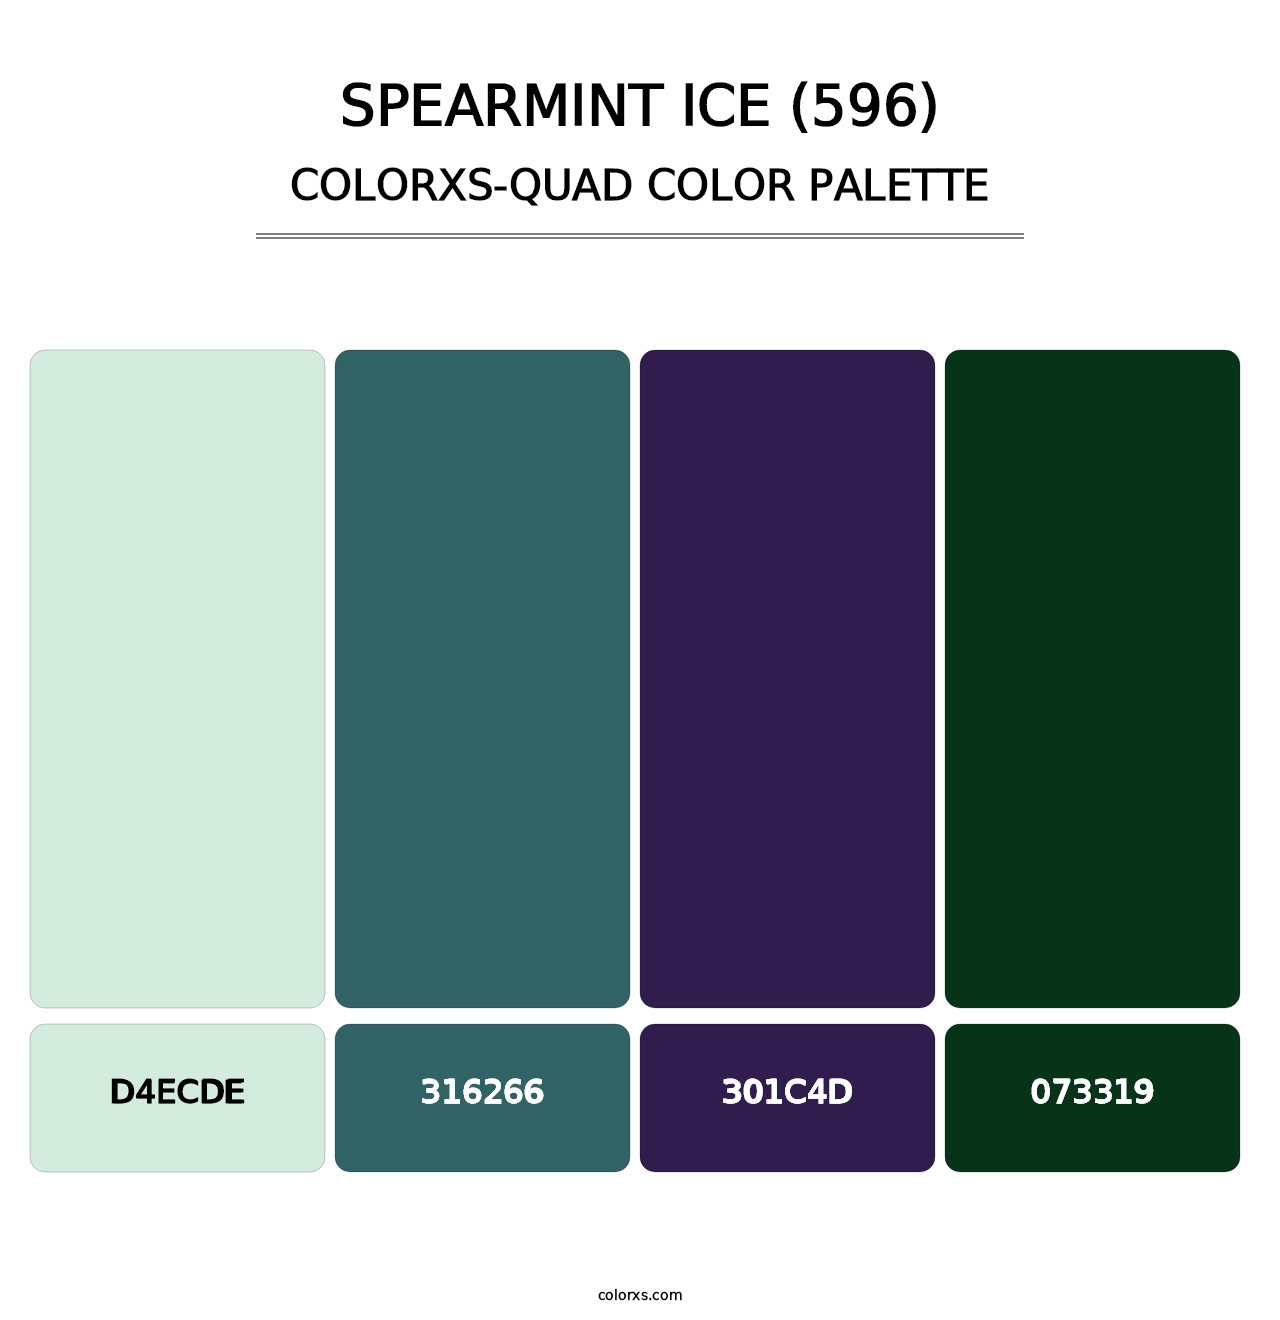 Spearmint Ice (596) - Colorxs Quad Palette